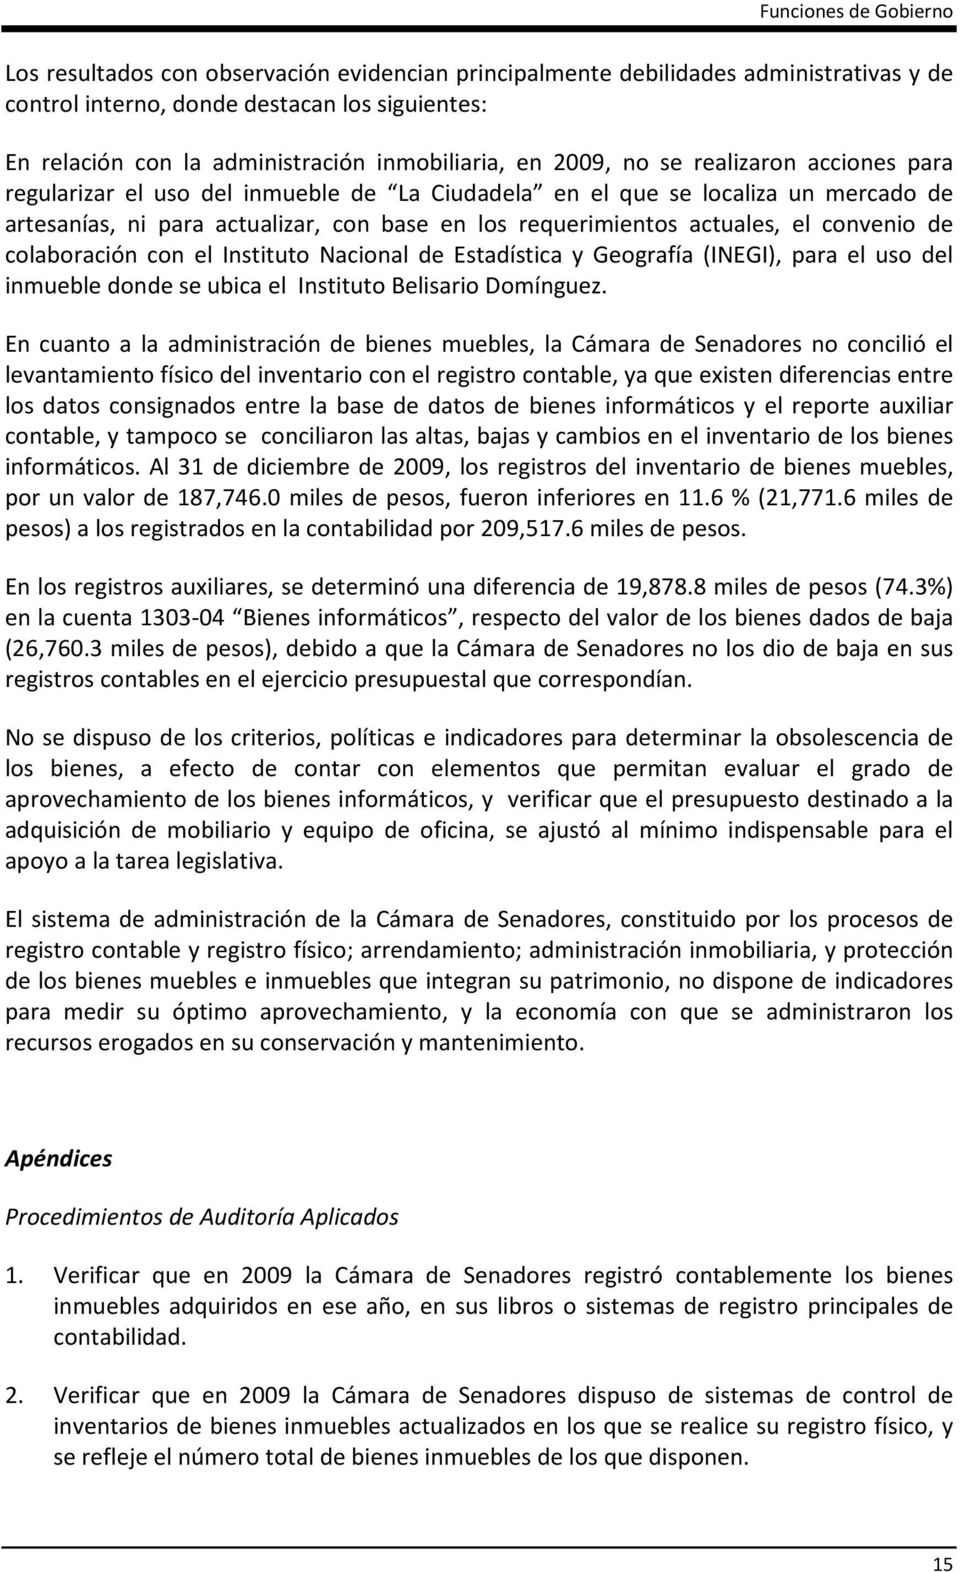 requerimientos actuales, el convenio de colaboración con el Instituto Nacional de Estadística y Geografía (INEGI), para el uso del inmueble donde se ubica el Instituto Belisario Domínguez.